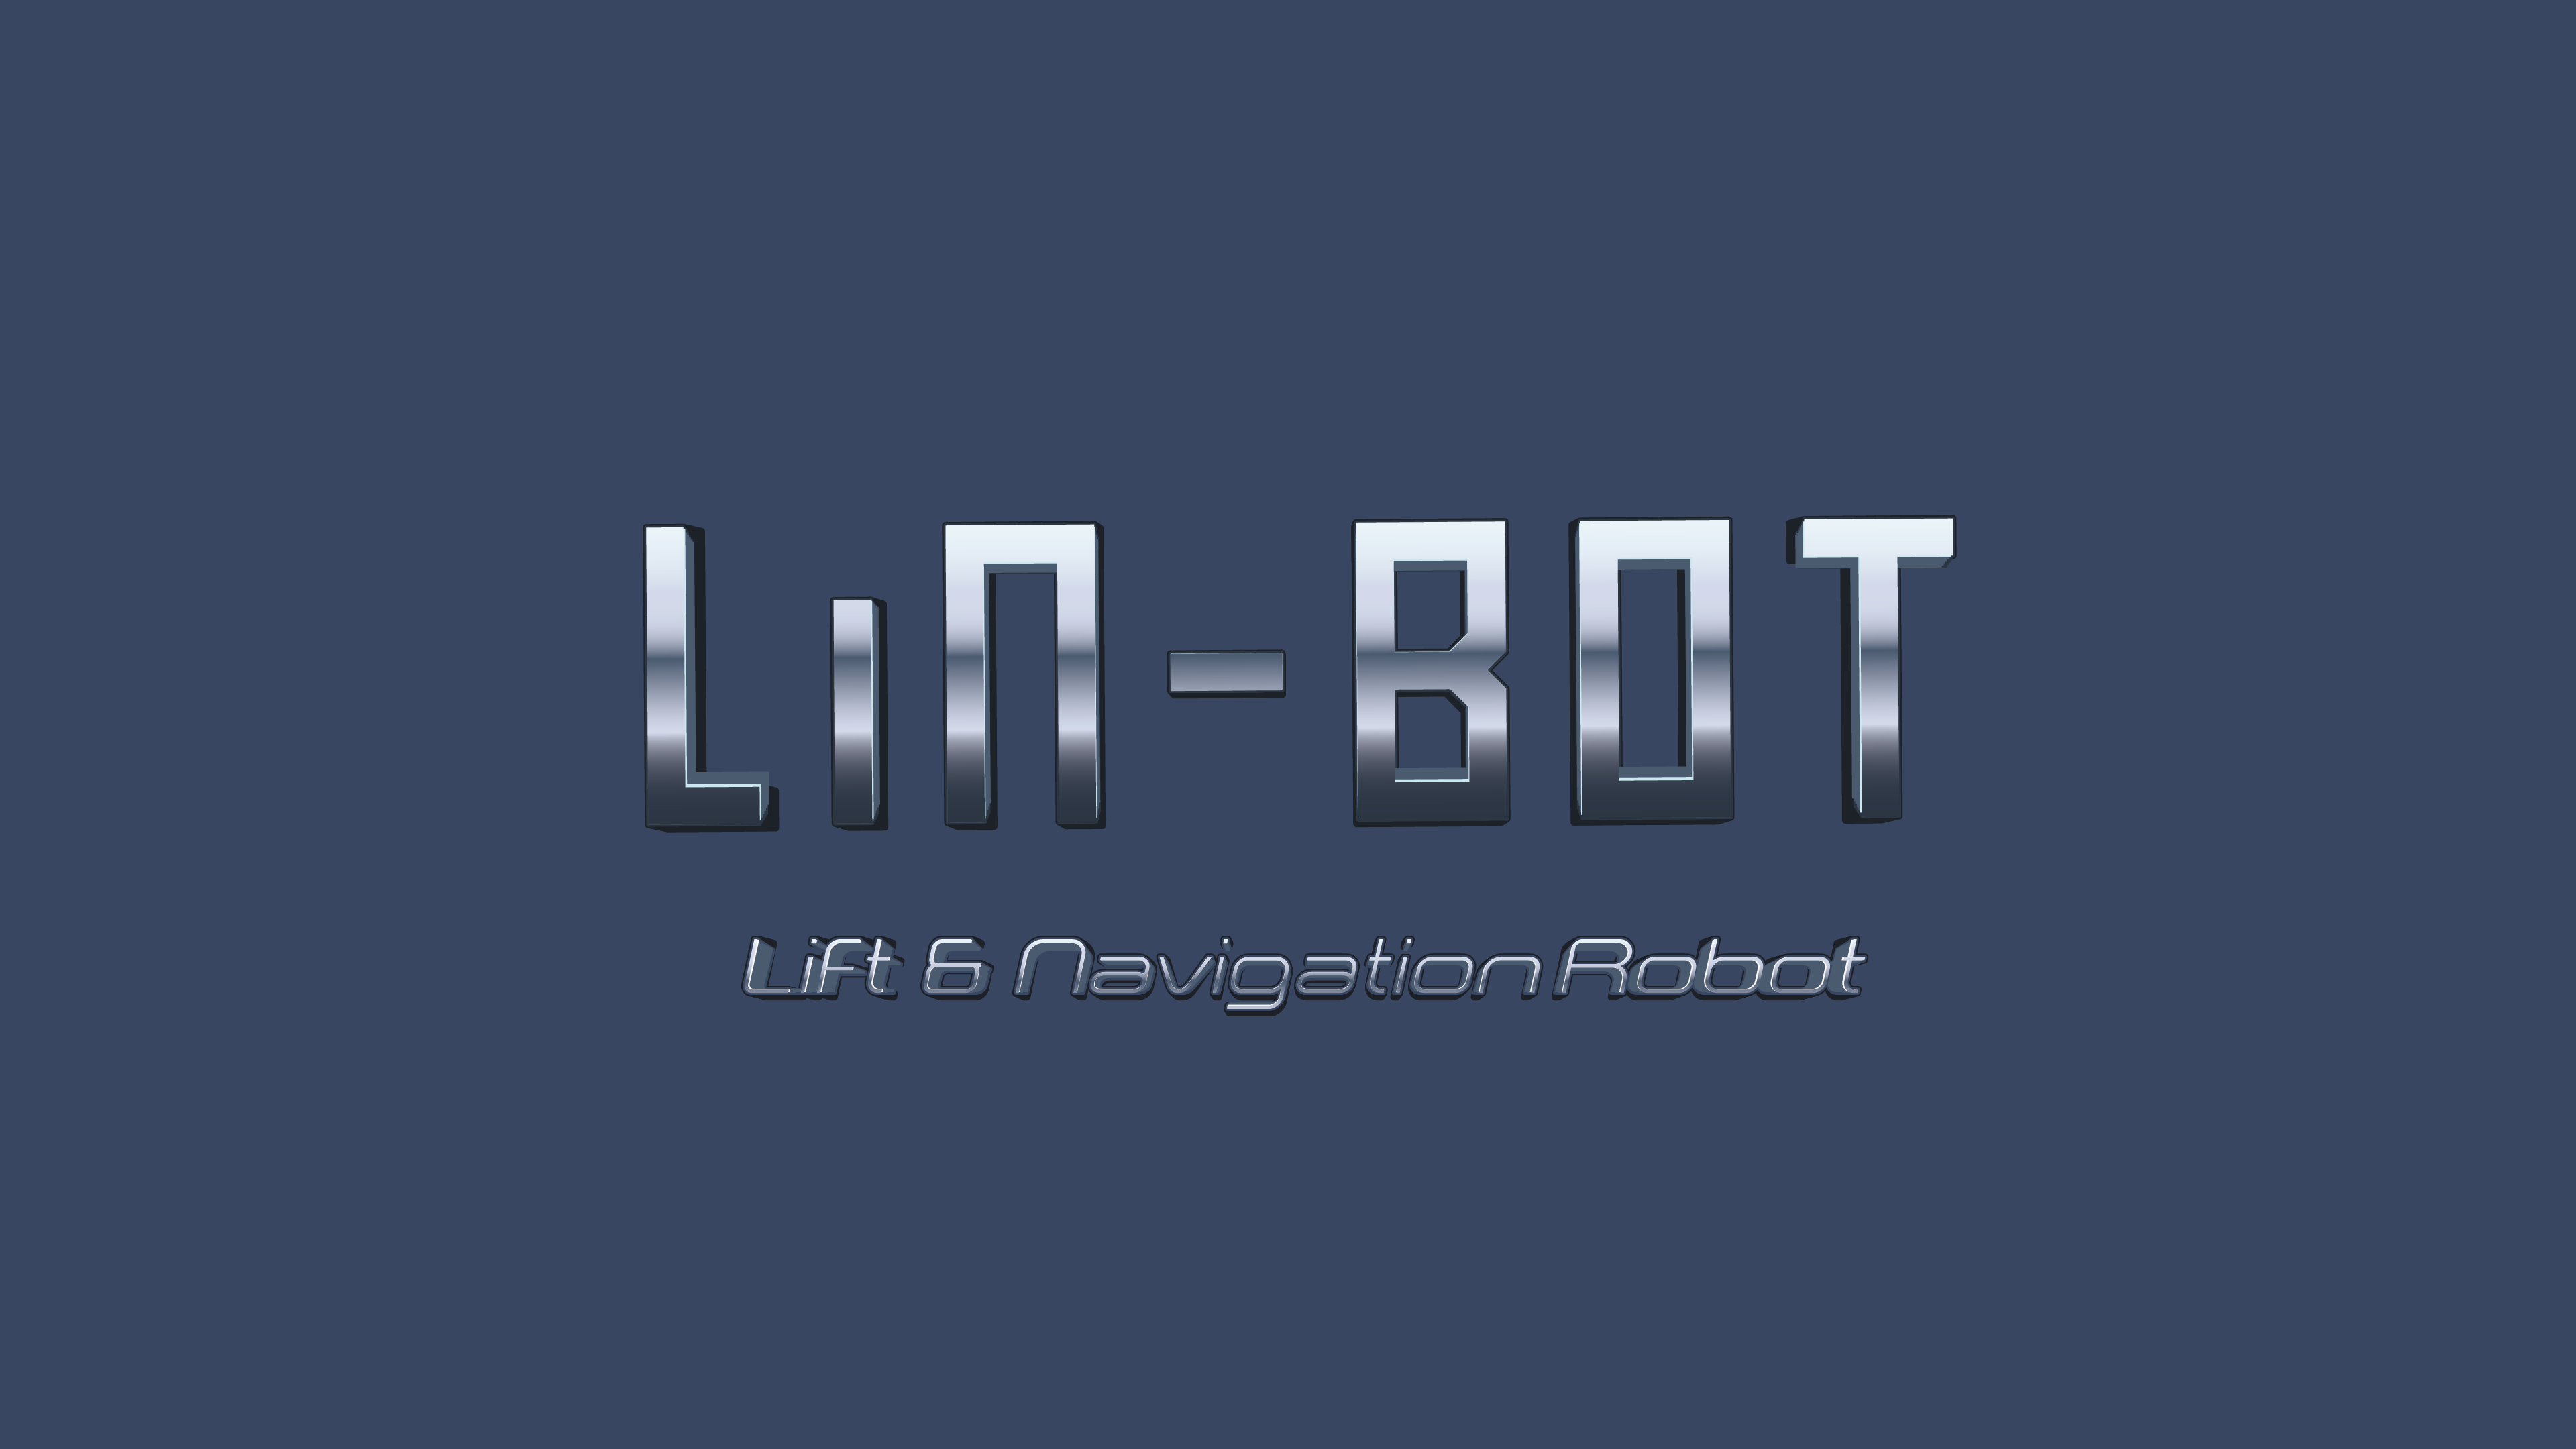 Lin-Bot - Lift e Navigation Robot